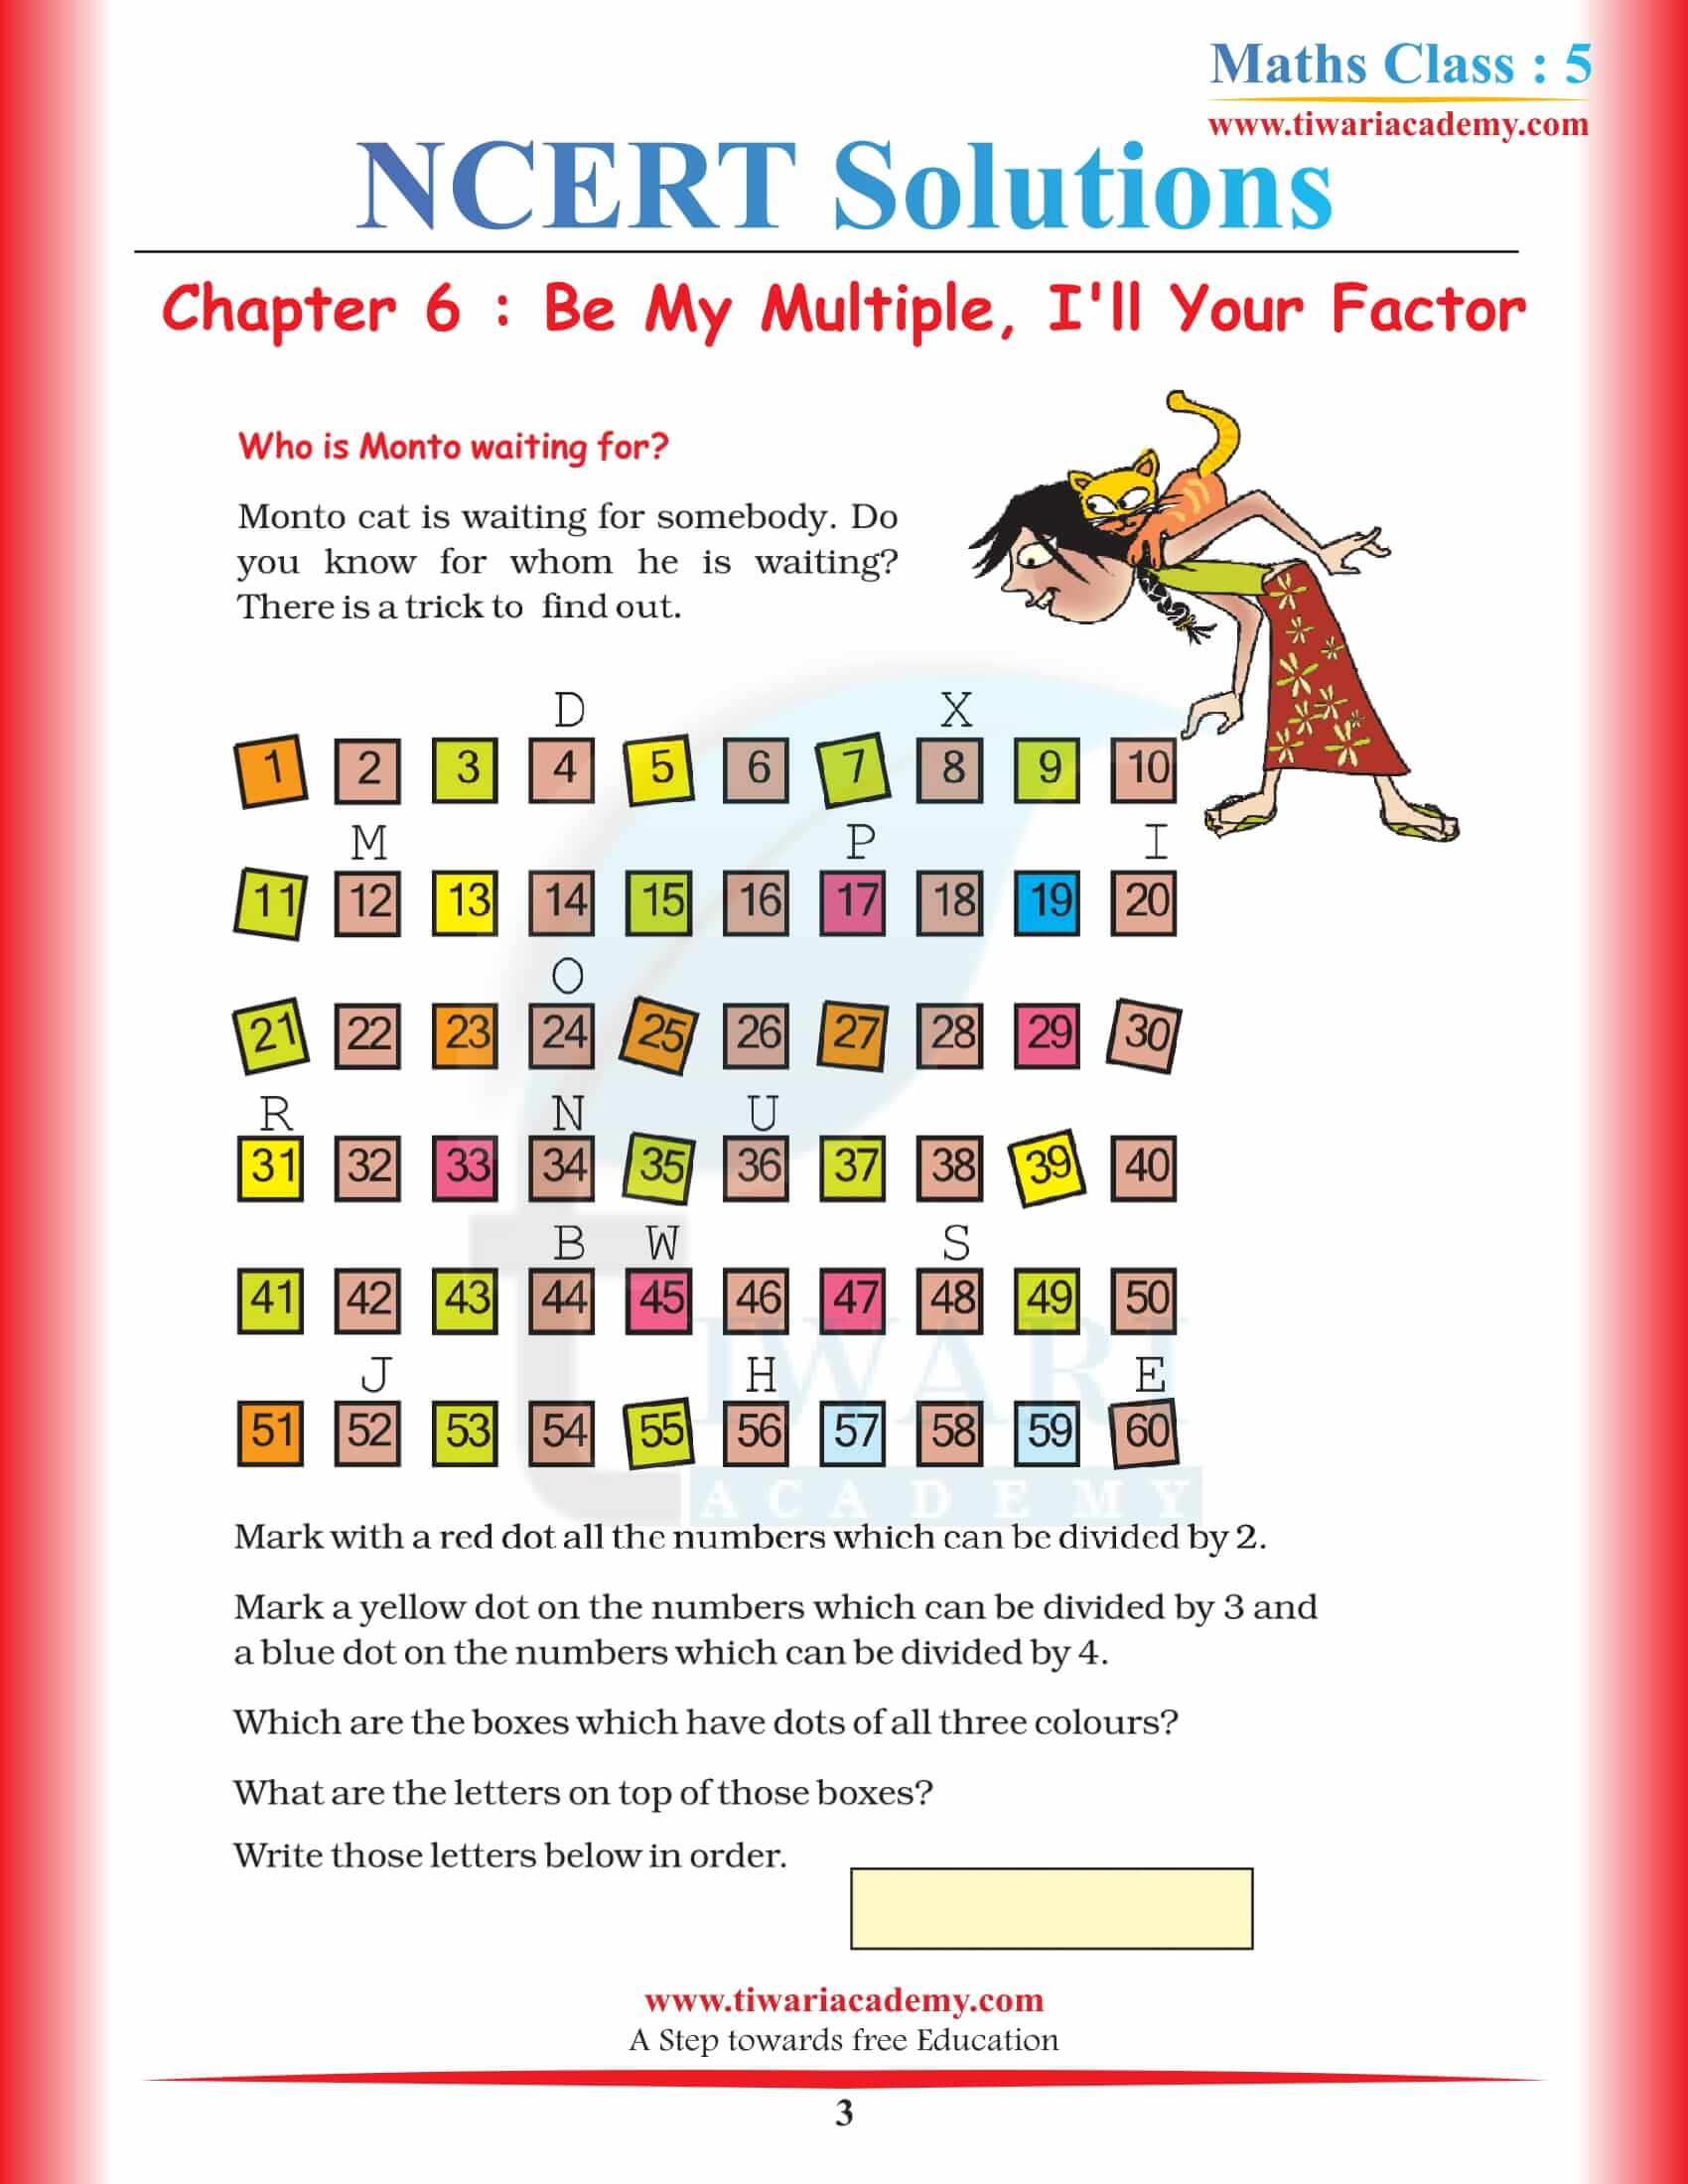 NCERT Solutions for Class 5 Maths Chapter 6